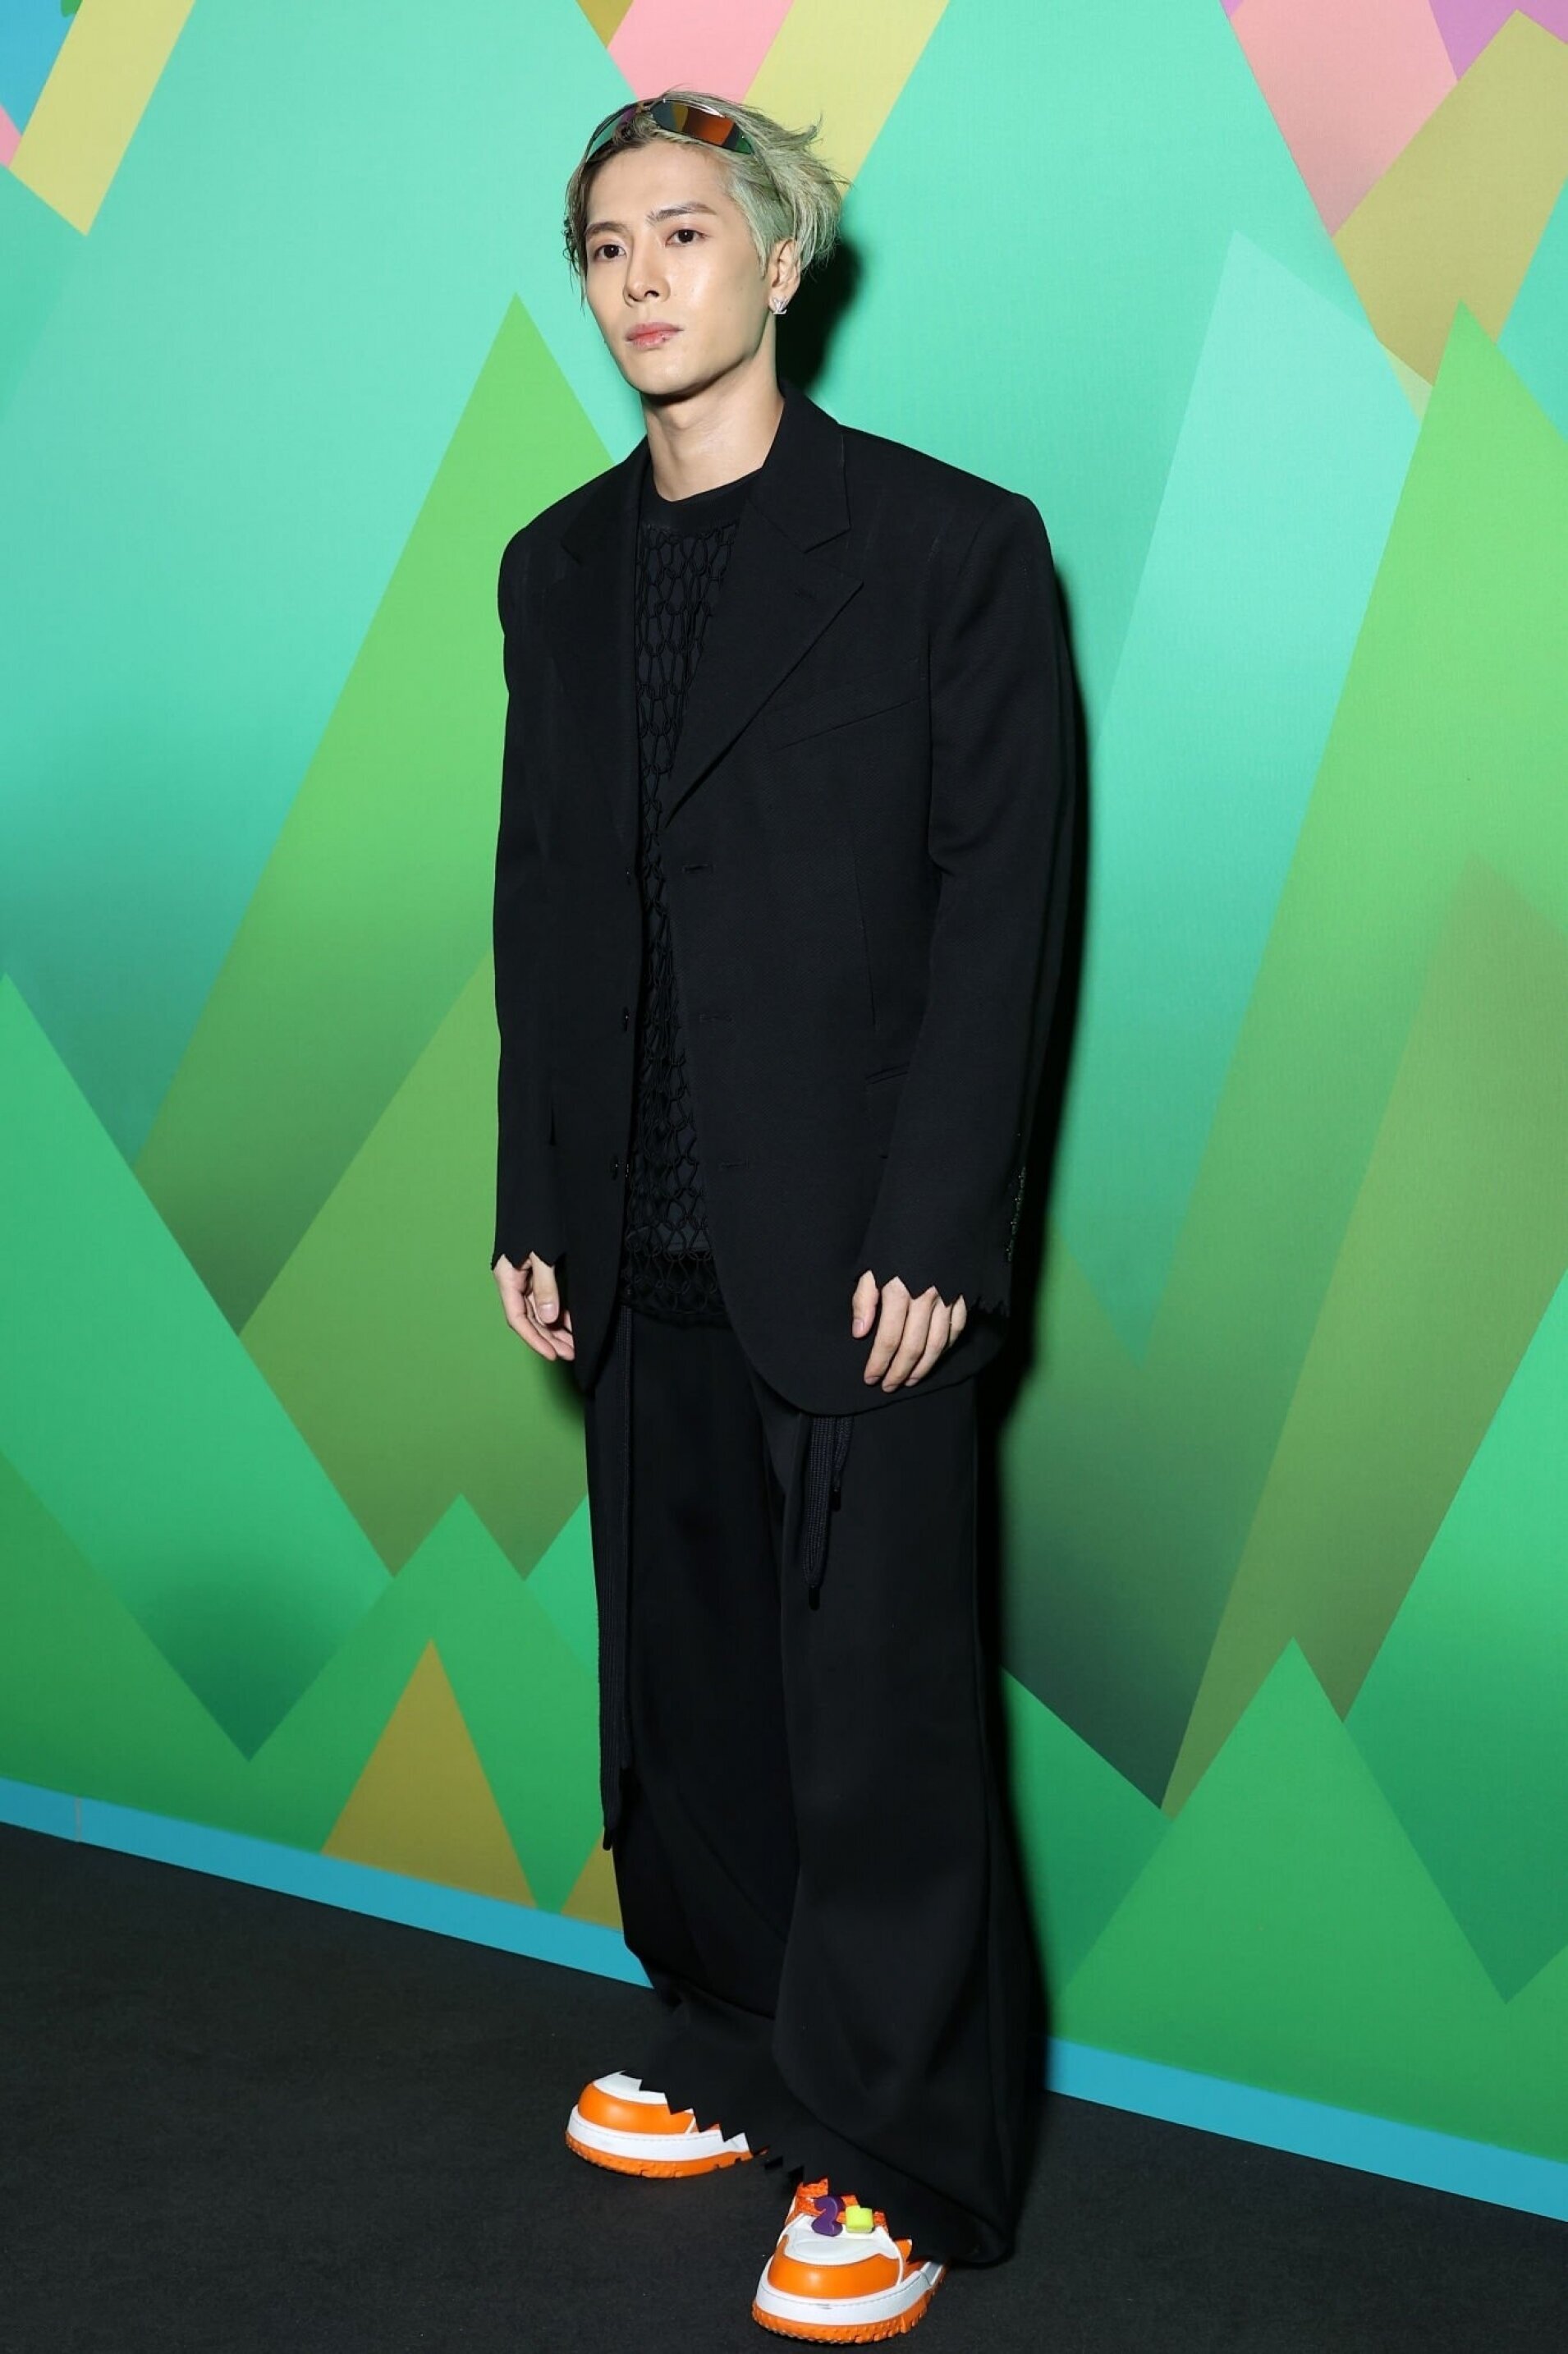 Jackson Wang Stuns In Classic Black Louis Vuitton Suit At Paris